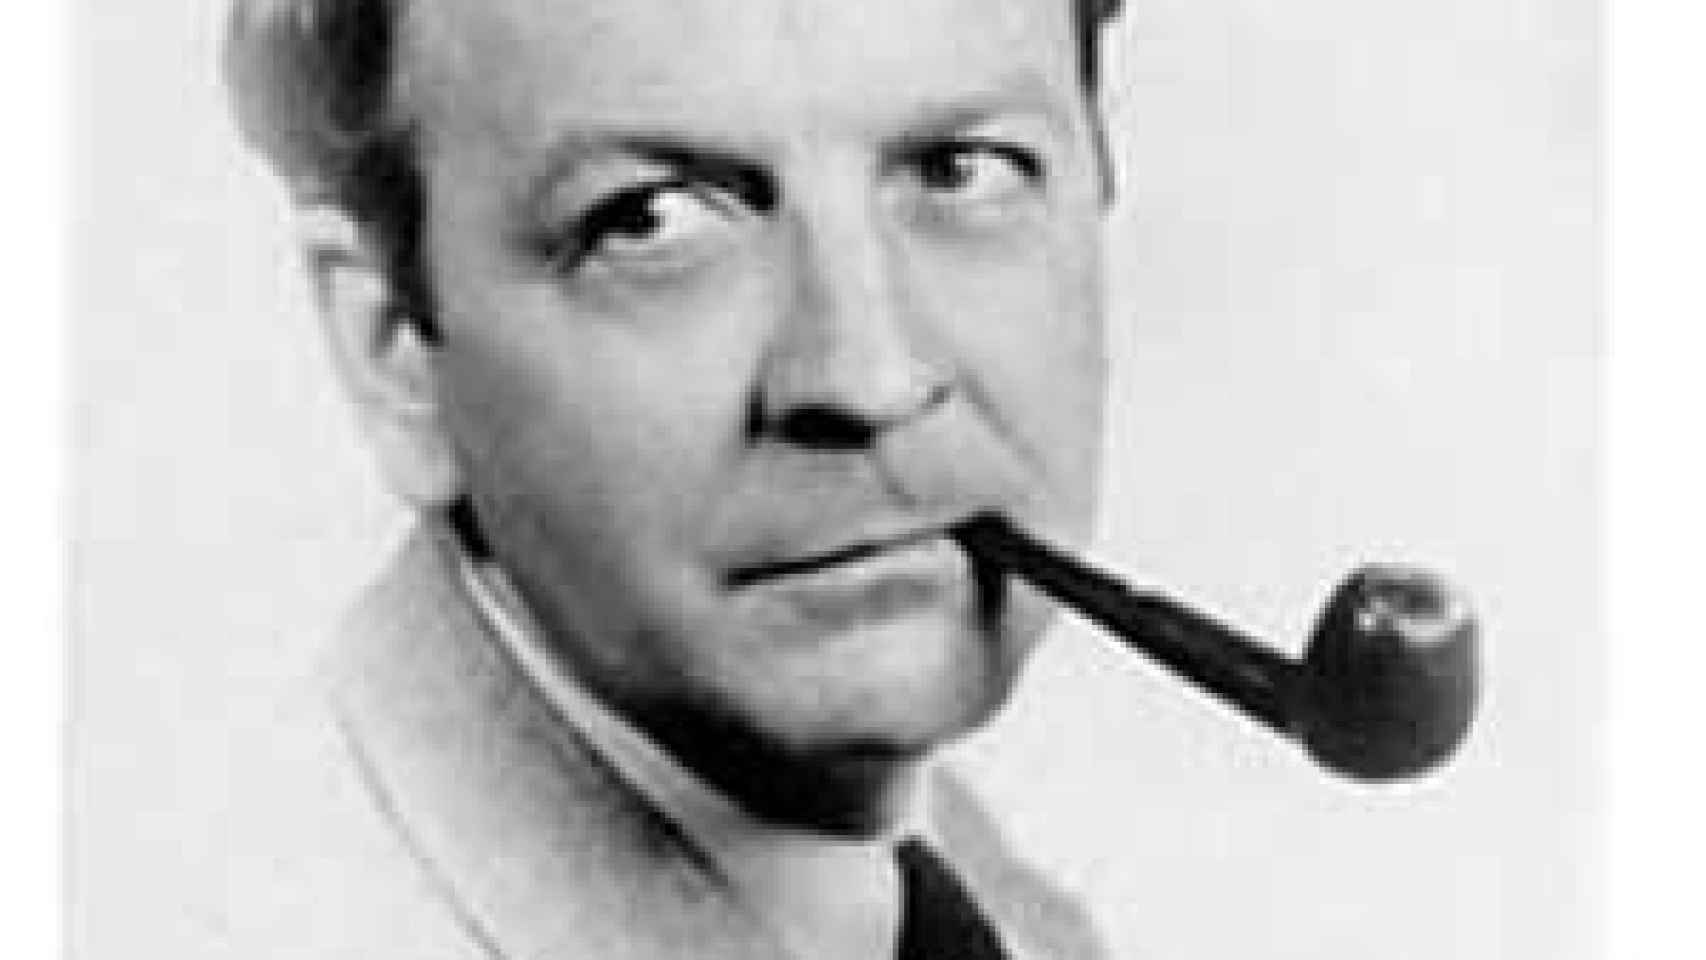 Image: 50 años de la muerte de Raymond Chandler, creador del legendario detective Philip Marlowe